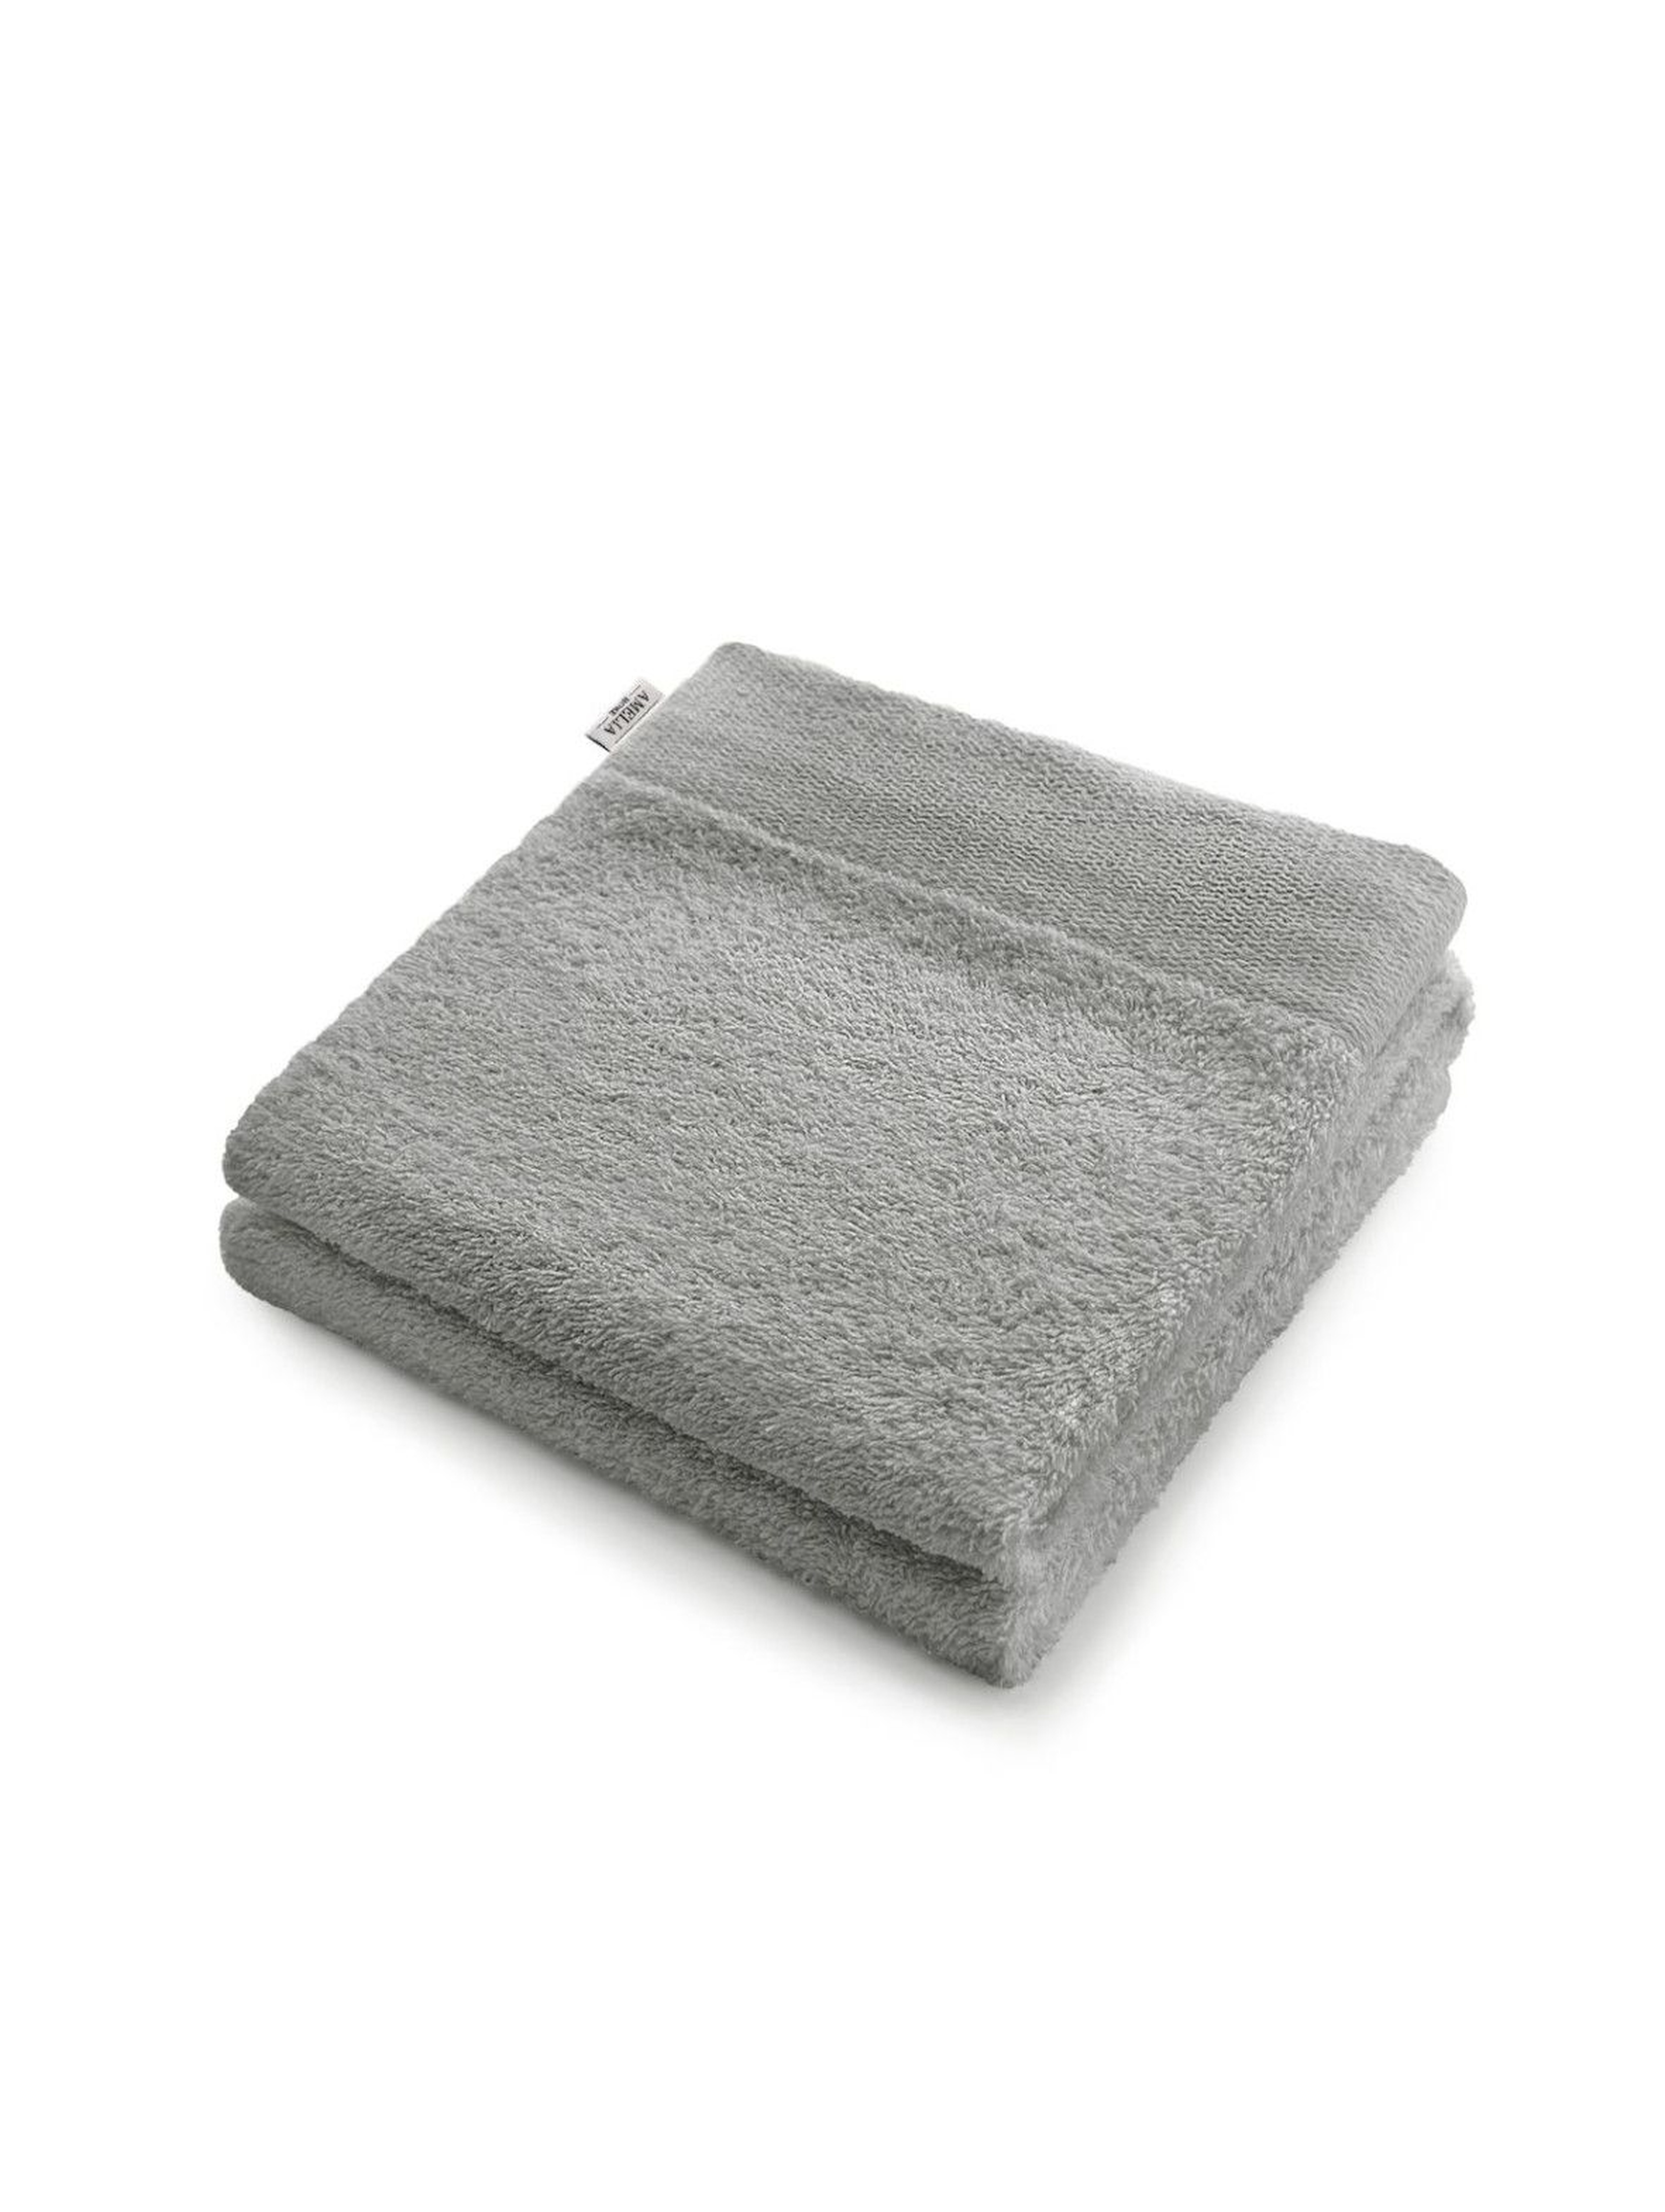 Bawełniany ręcznik kąpielowy - szary - 50x100 cm